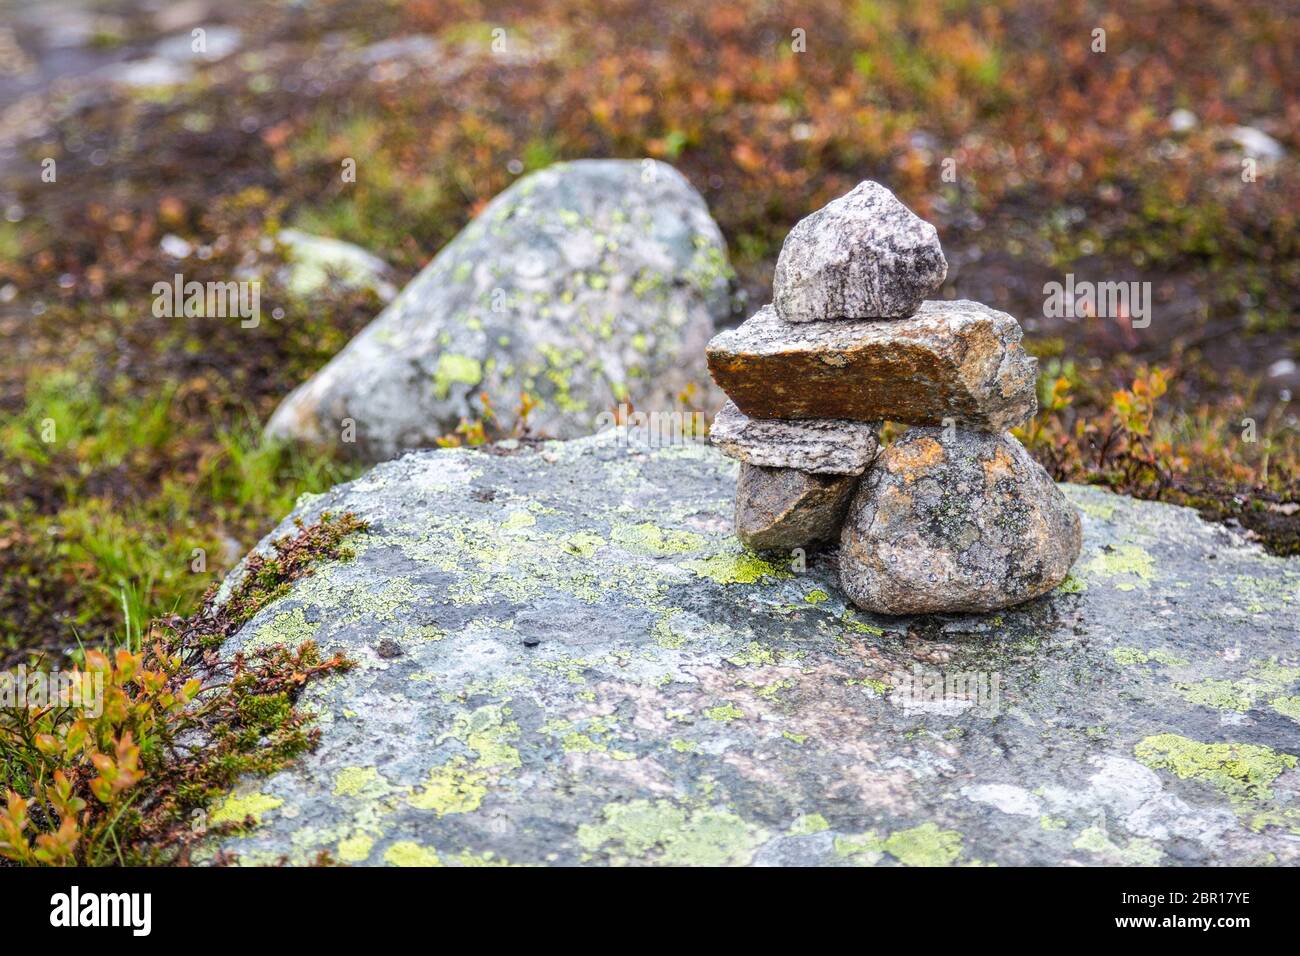 Angehäuft Steine sind Häuser für norwegische Märchen Trolle. Troll Haus aus  Steinen gemacht. Touristen sind Gebäude troll Häuser aus Steinen, nach l  Stockfotografie - Alamy